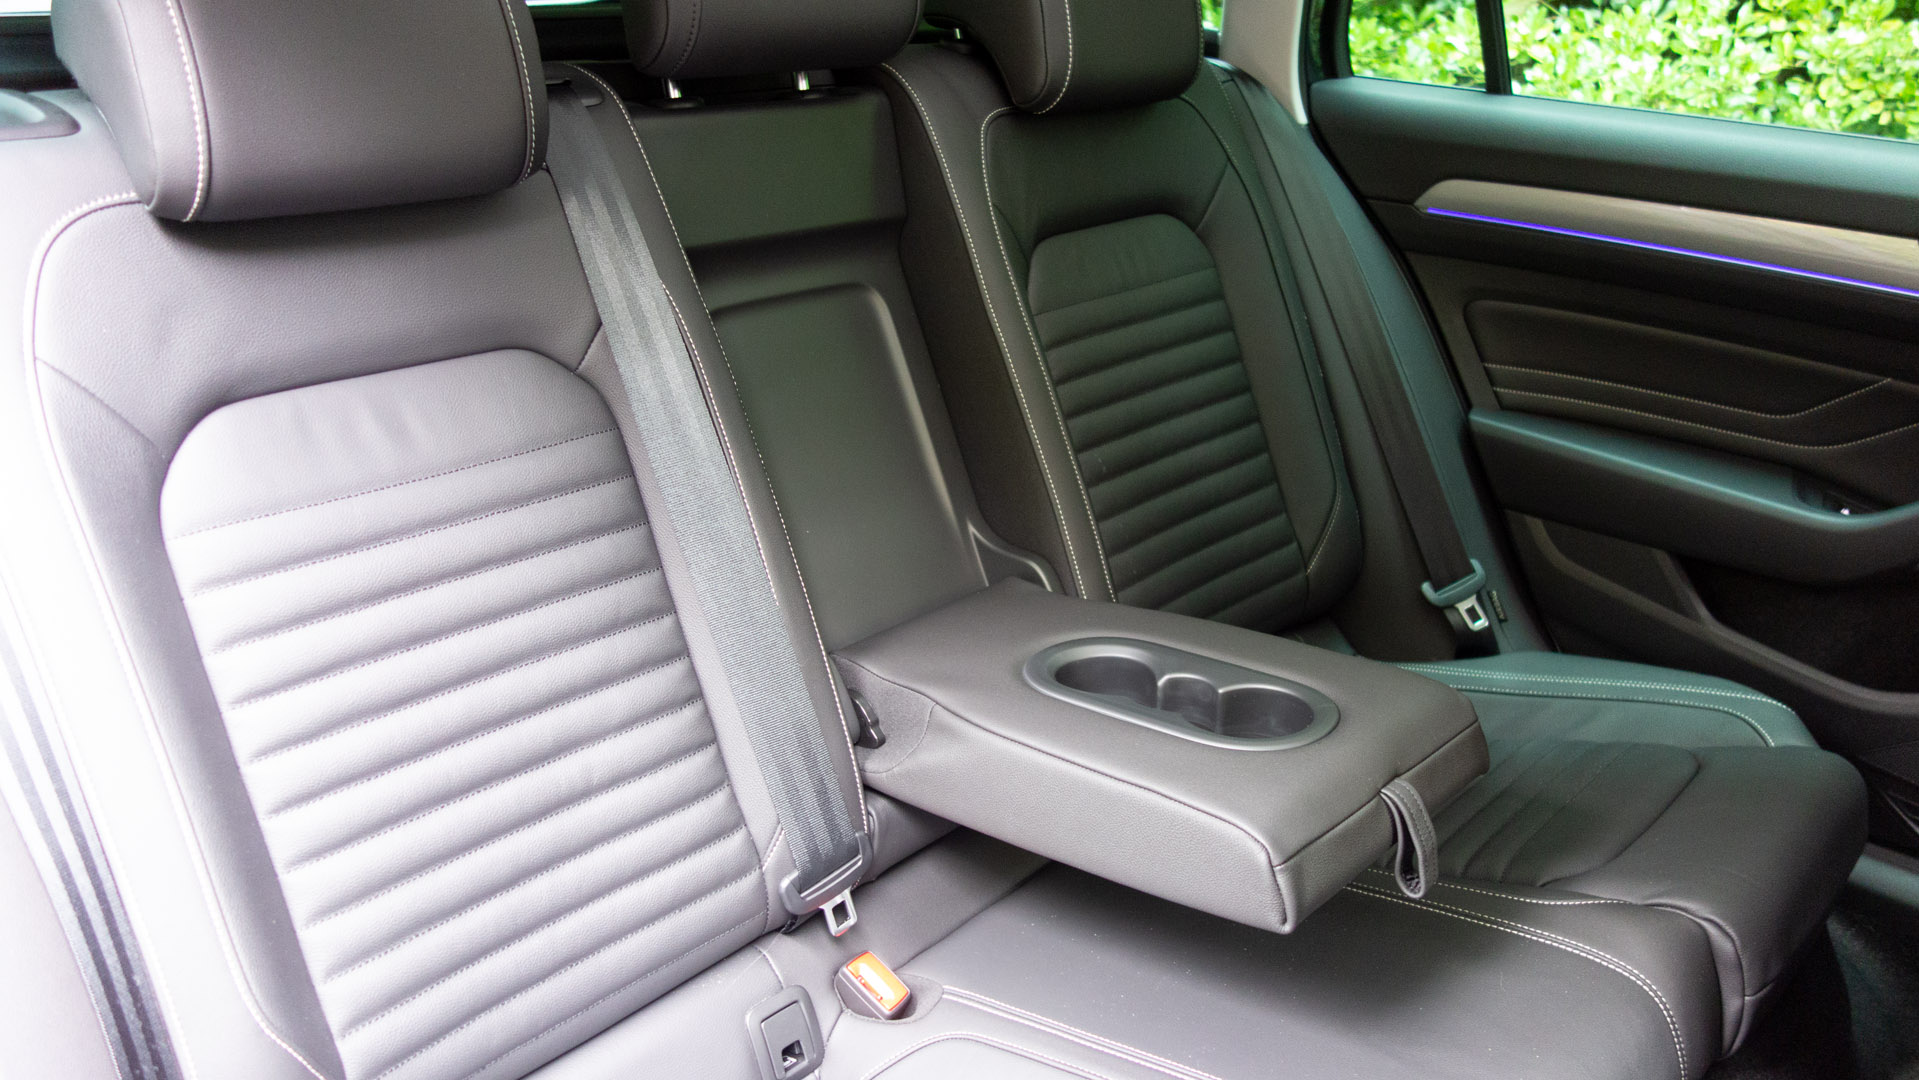 Volkswagen Passat Estate GTE rear seat comfort